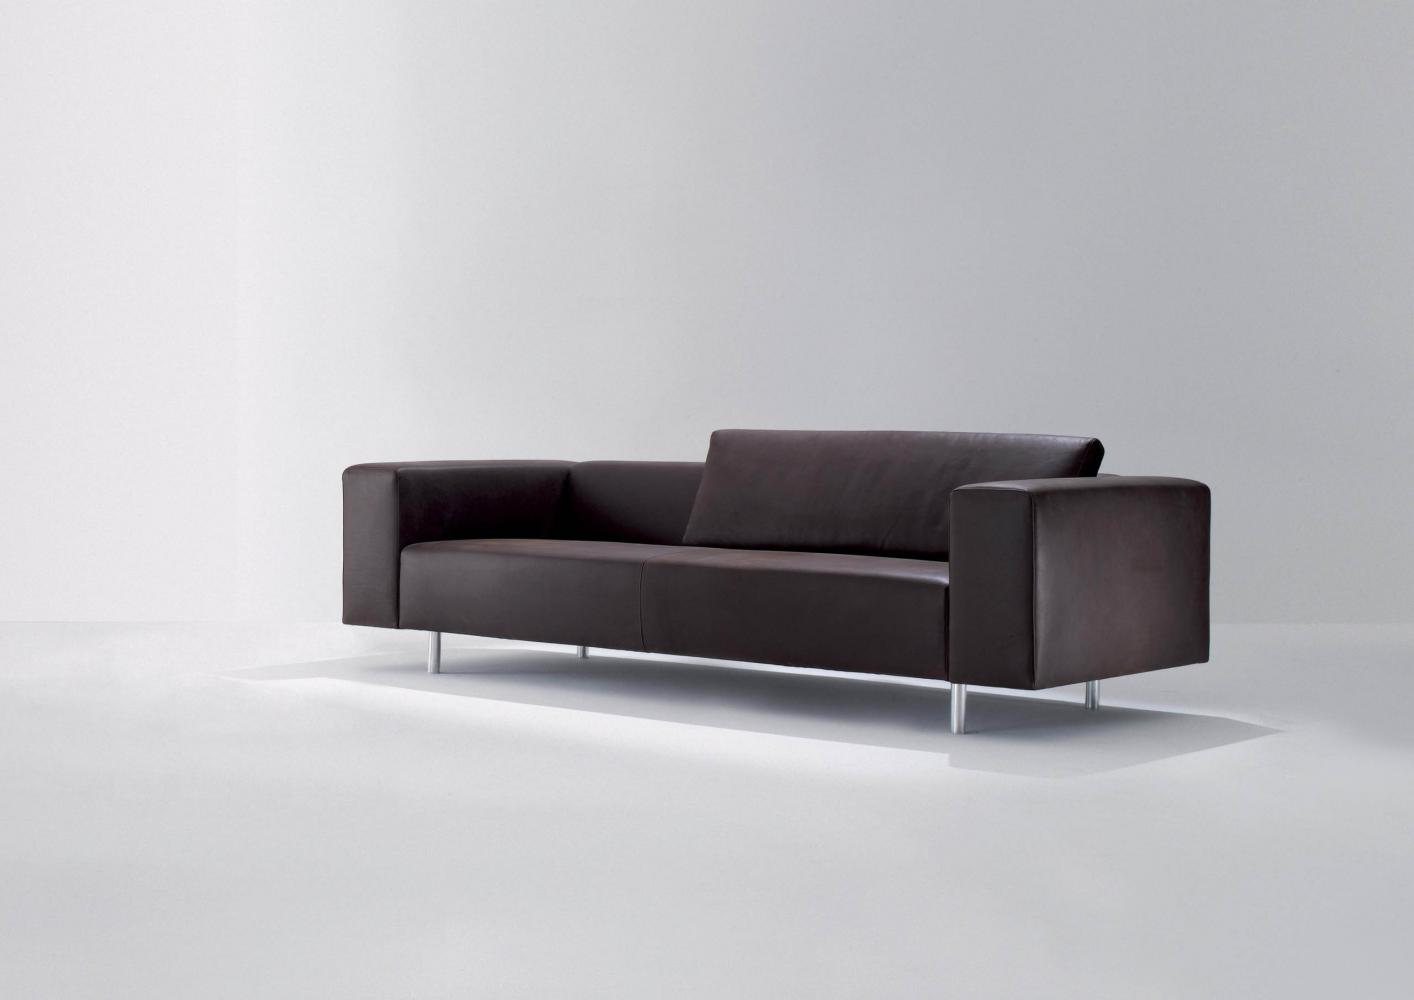 laurameroni orchestra system modular sofa adagio in fine leather, velvet or fabric